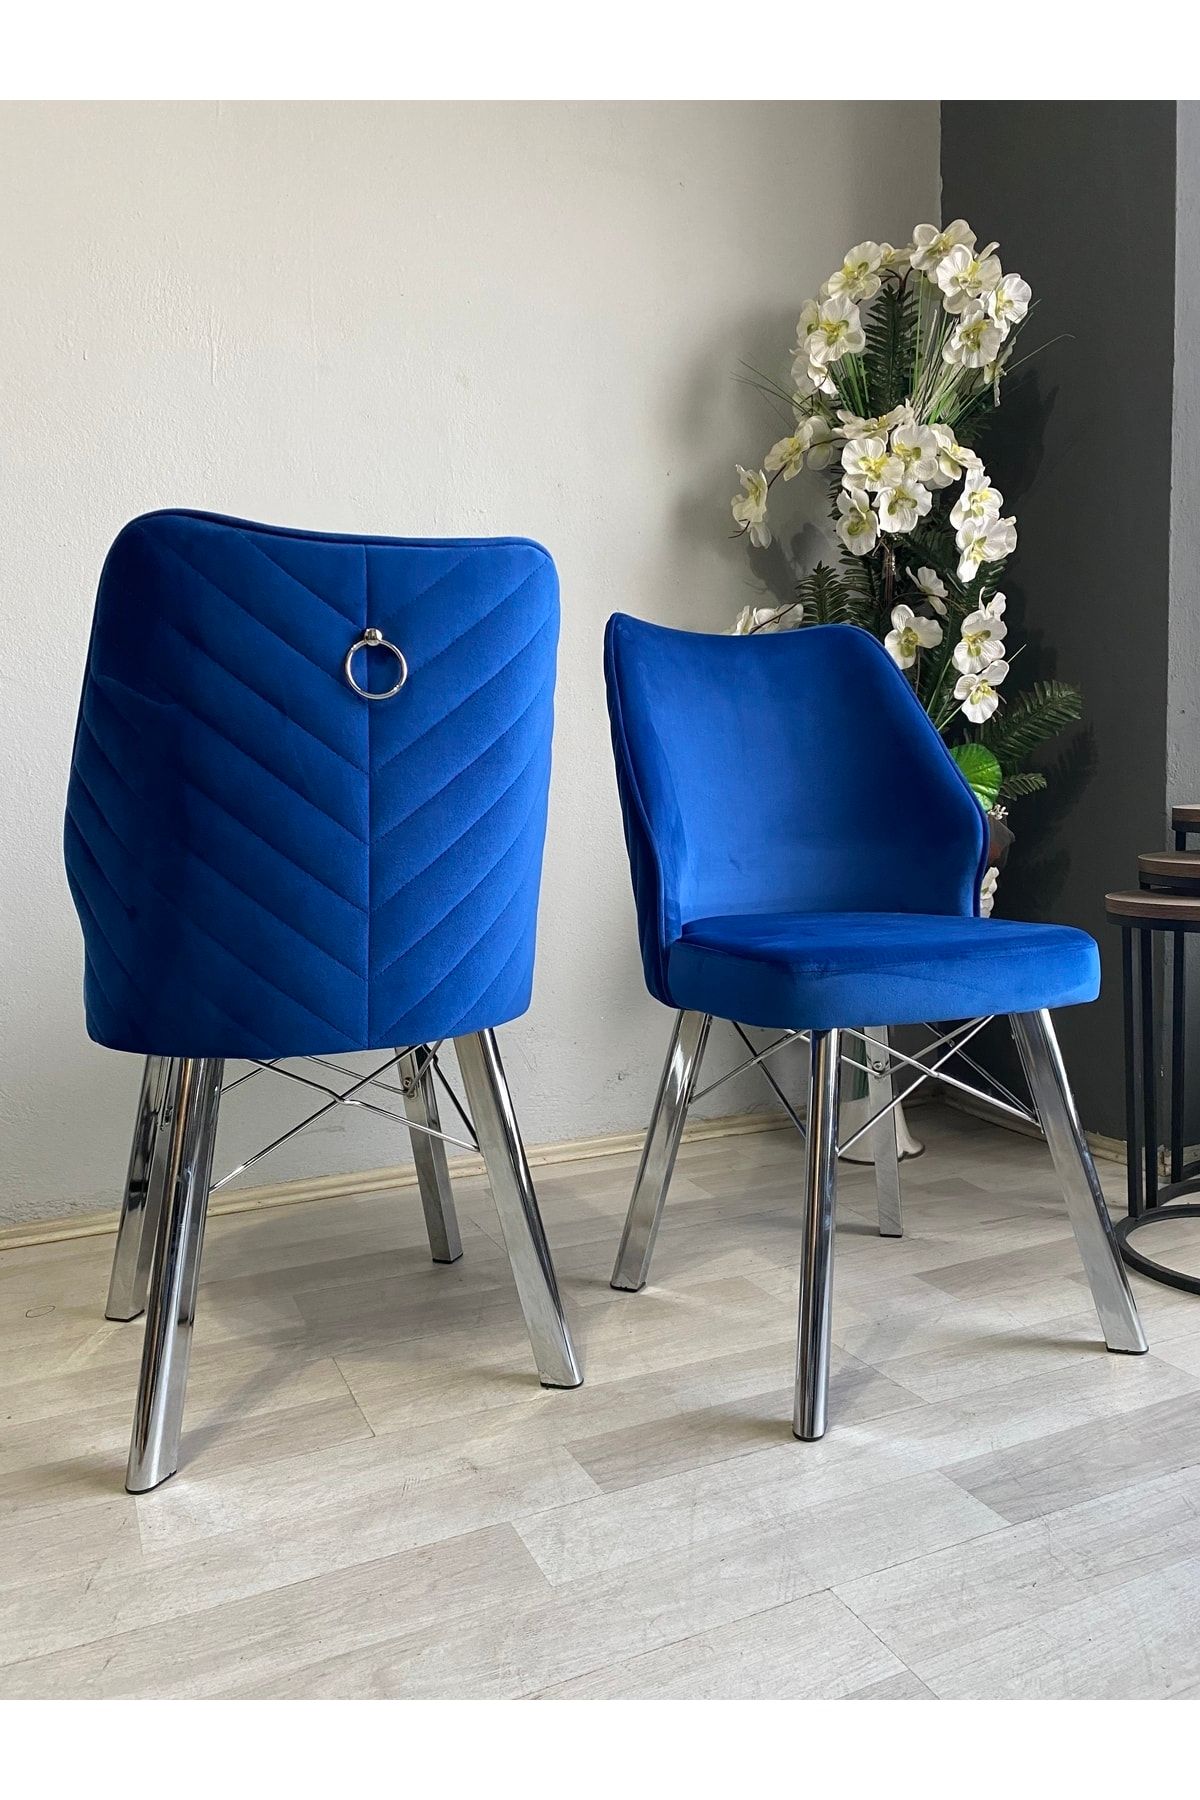 sadak Sandalye Eyfel Mavi Sandalye Gümüş Ayak - Mutfak Salon Yemek Odası Sandalyesi